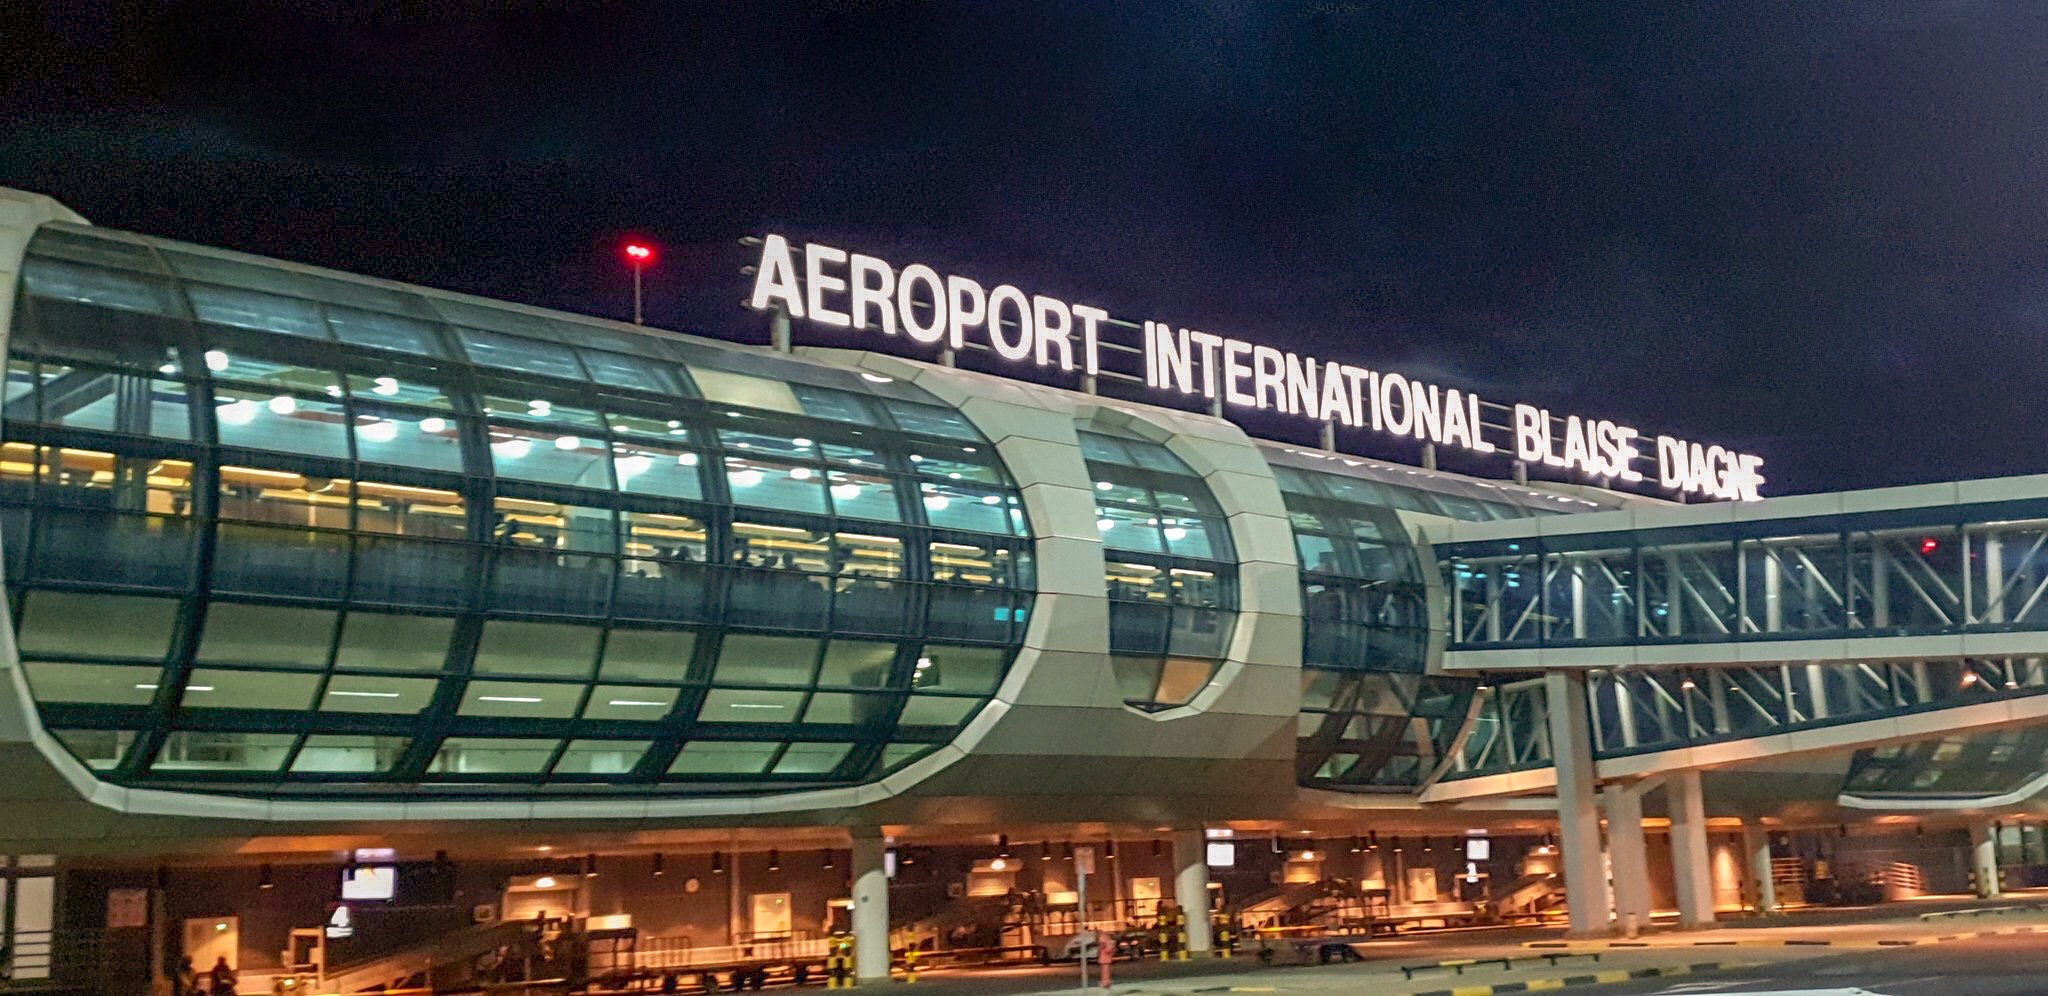 Aéroport_international Blaise Diagne